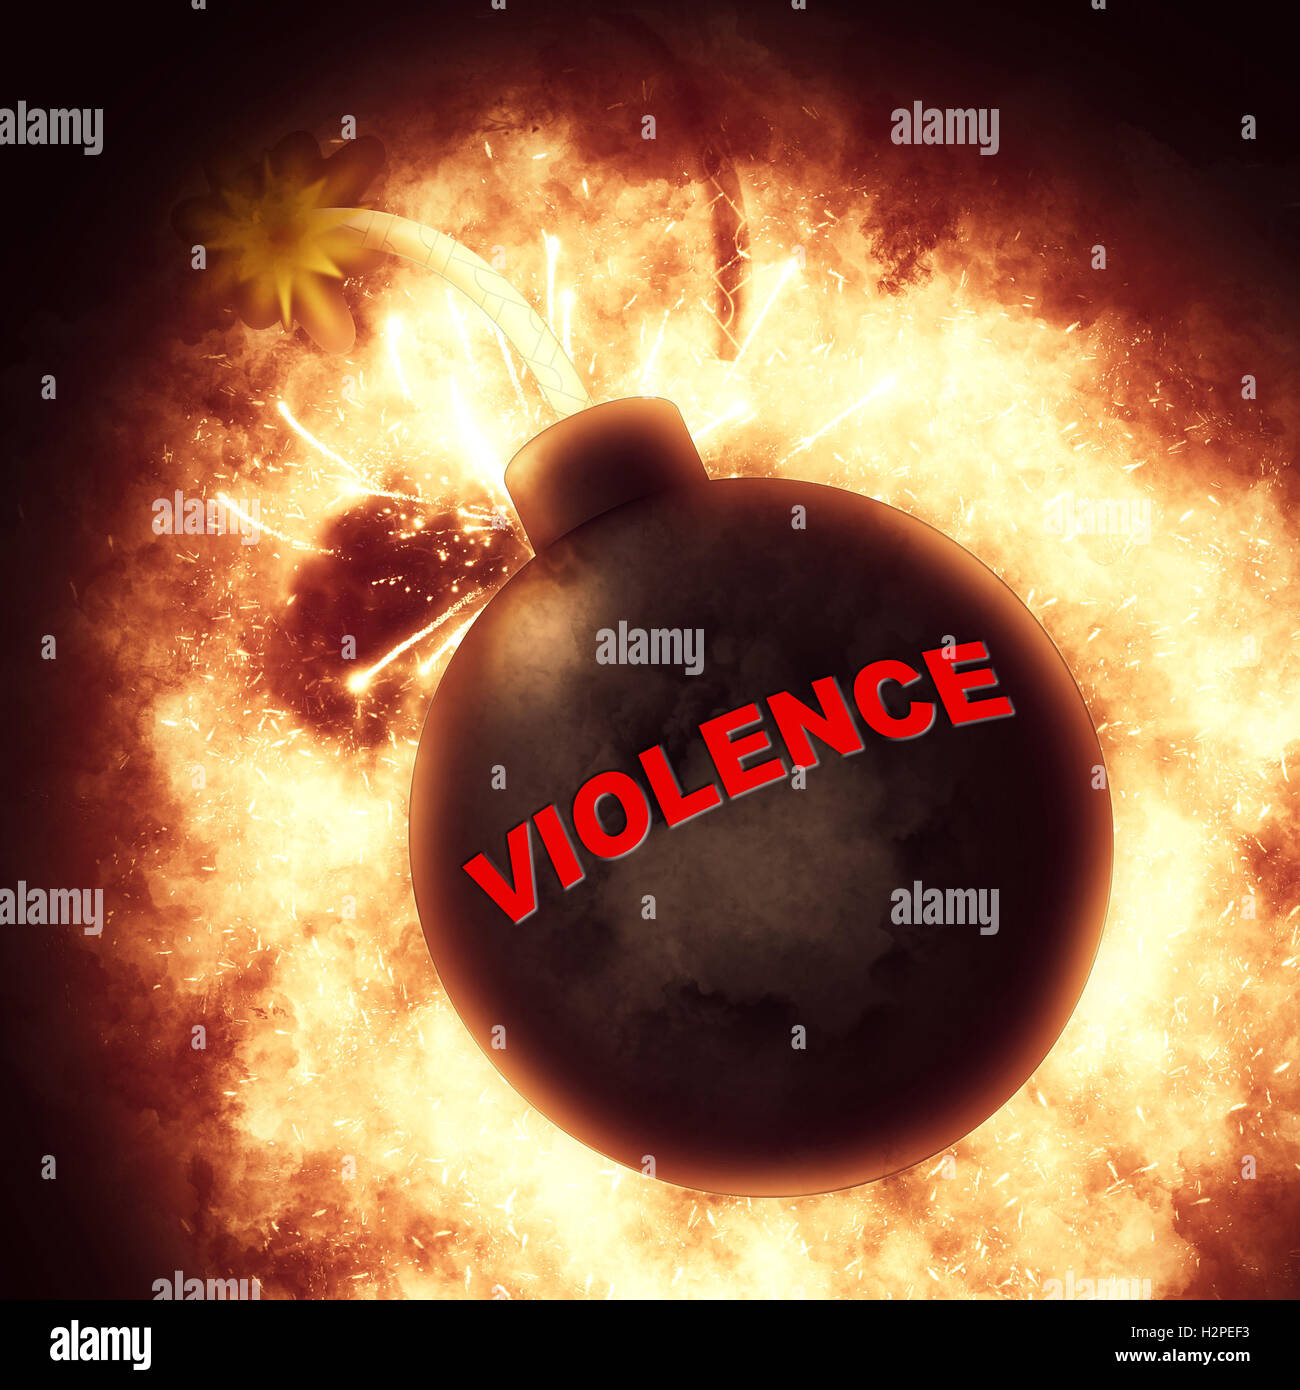 Gewalt-Bombe Angabe Brute-Force und Wildheit Stockfoto